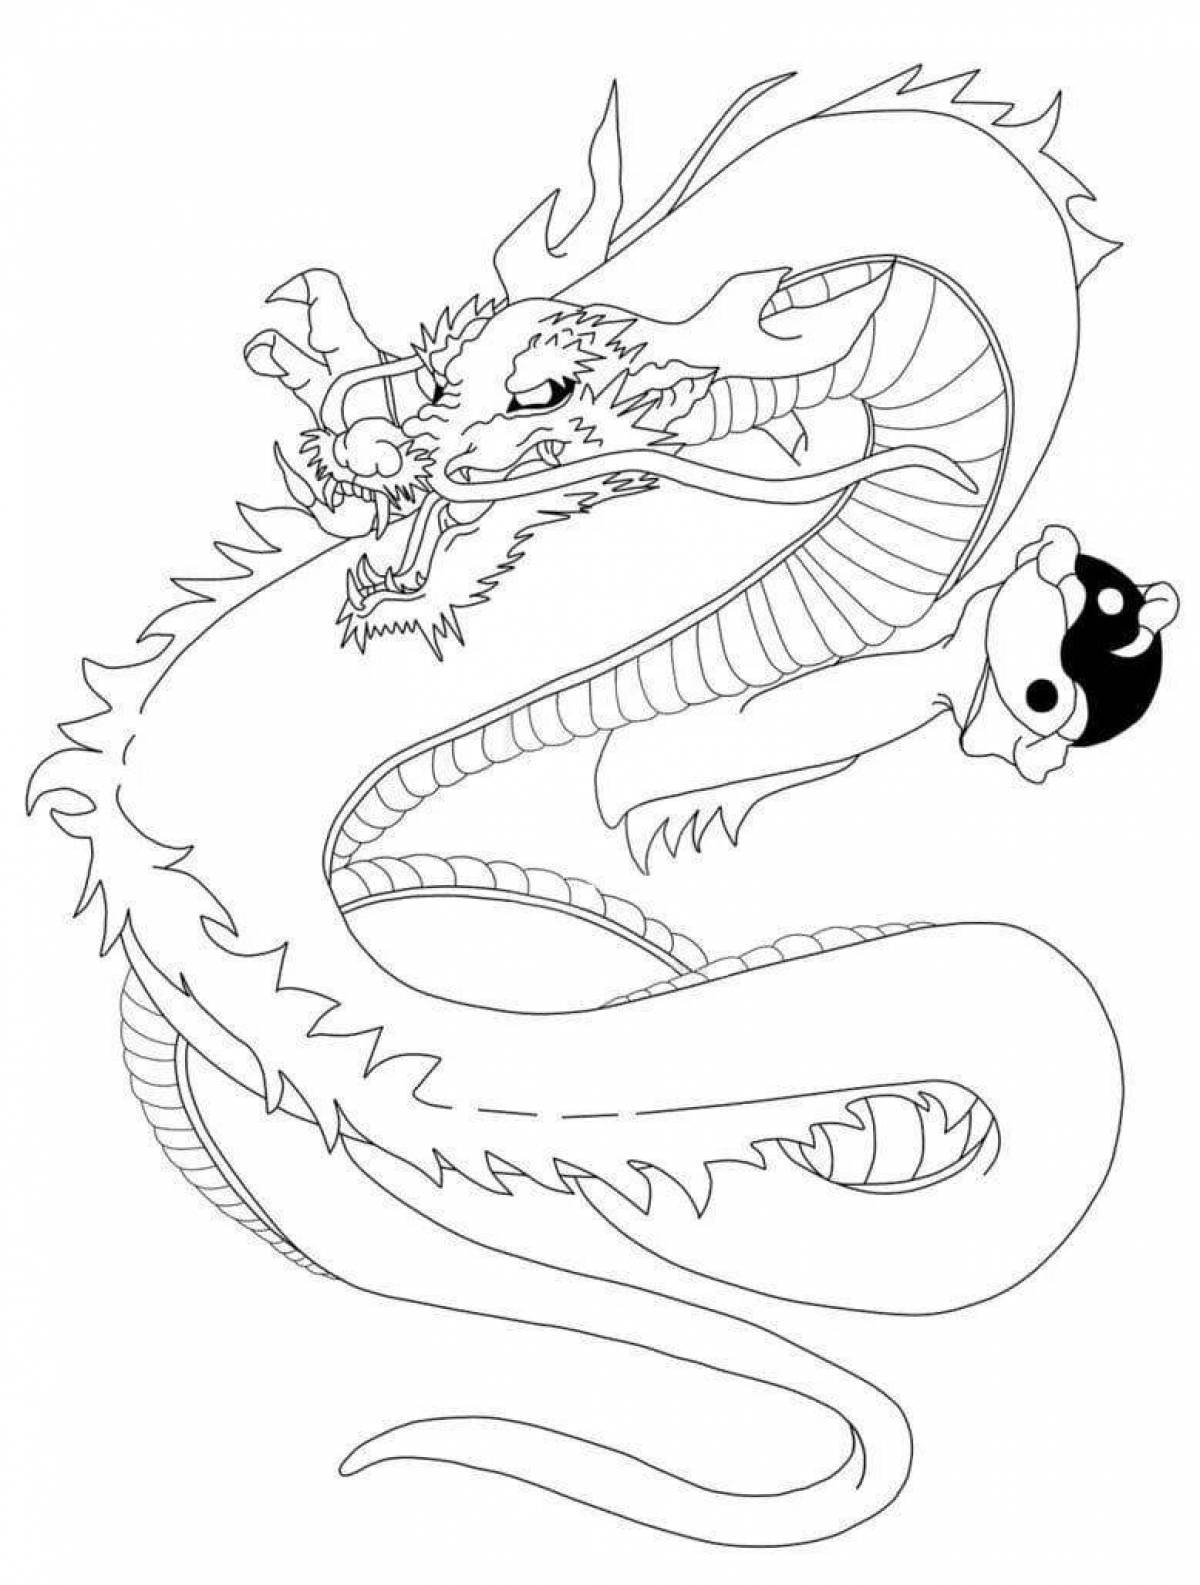 Драматическая китайская раскраска дракона для детей